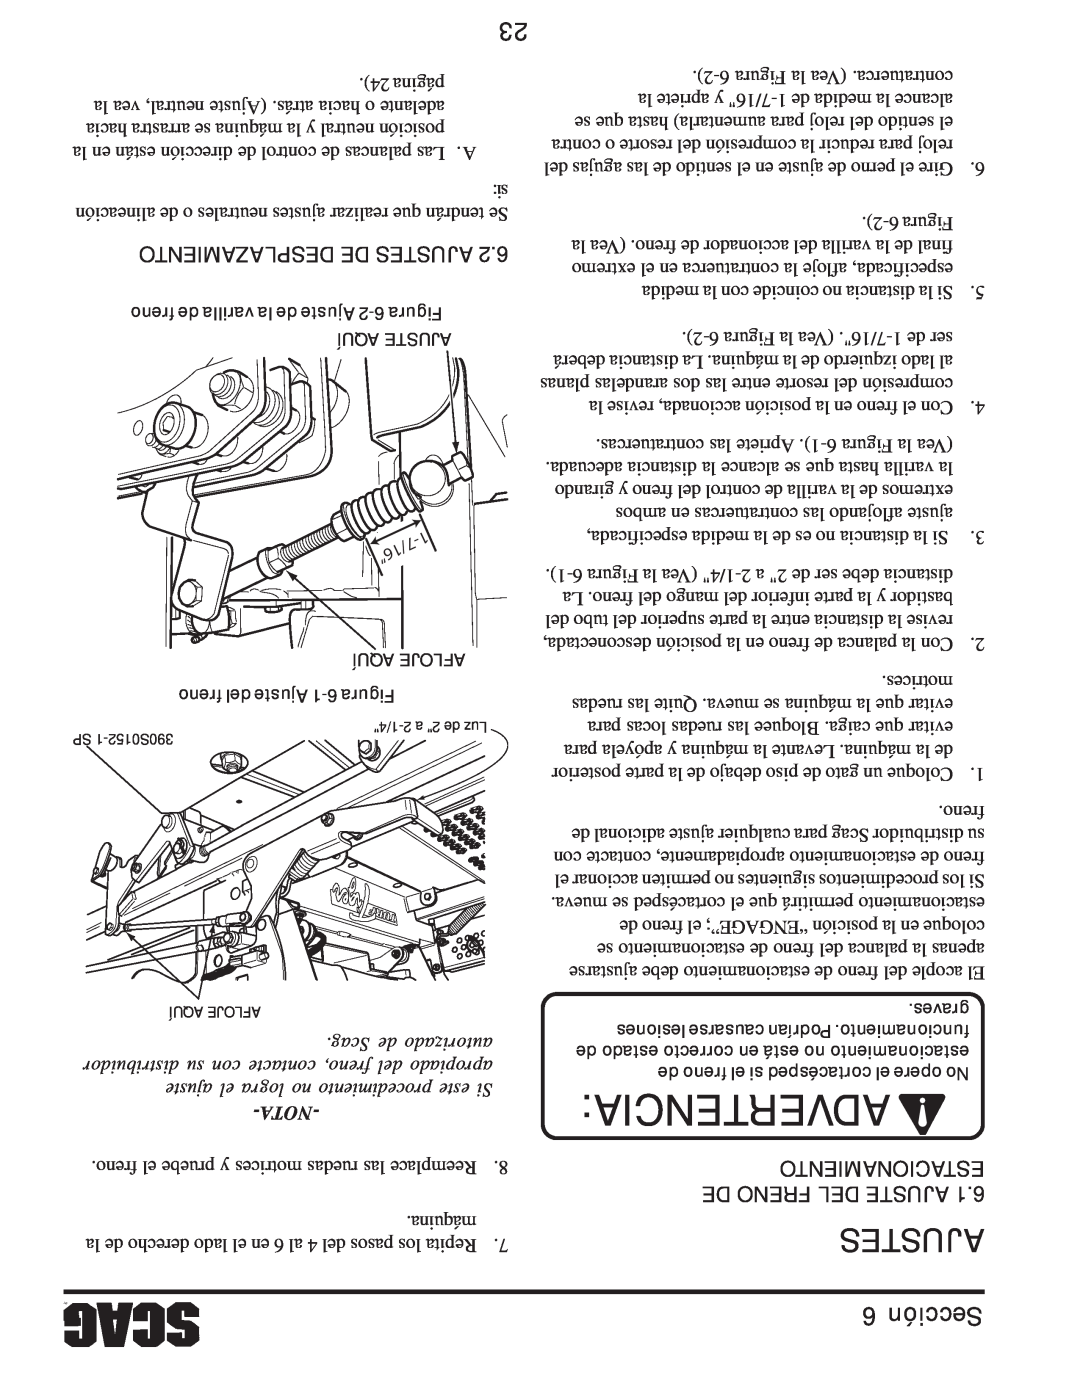 Scag Power Equipment STT61V-31EFI-SS manual Desplazamiento De Ajustes, Advertencia, Sección, Scag de autorizado, Nota 